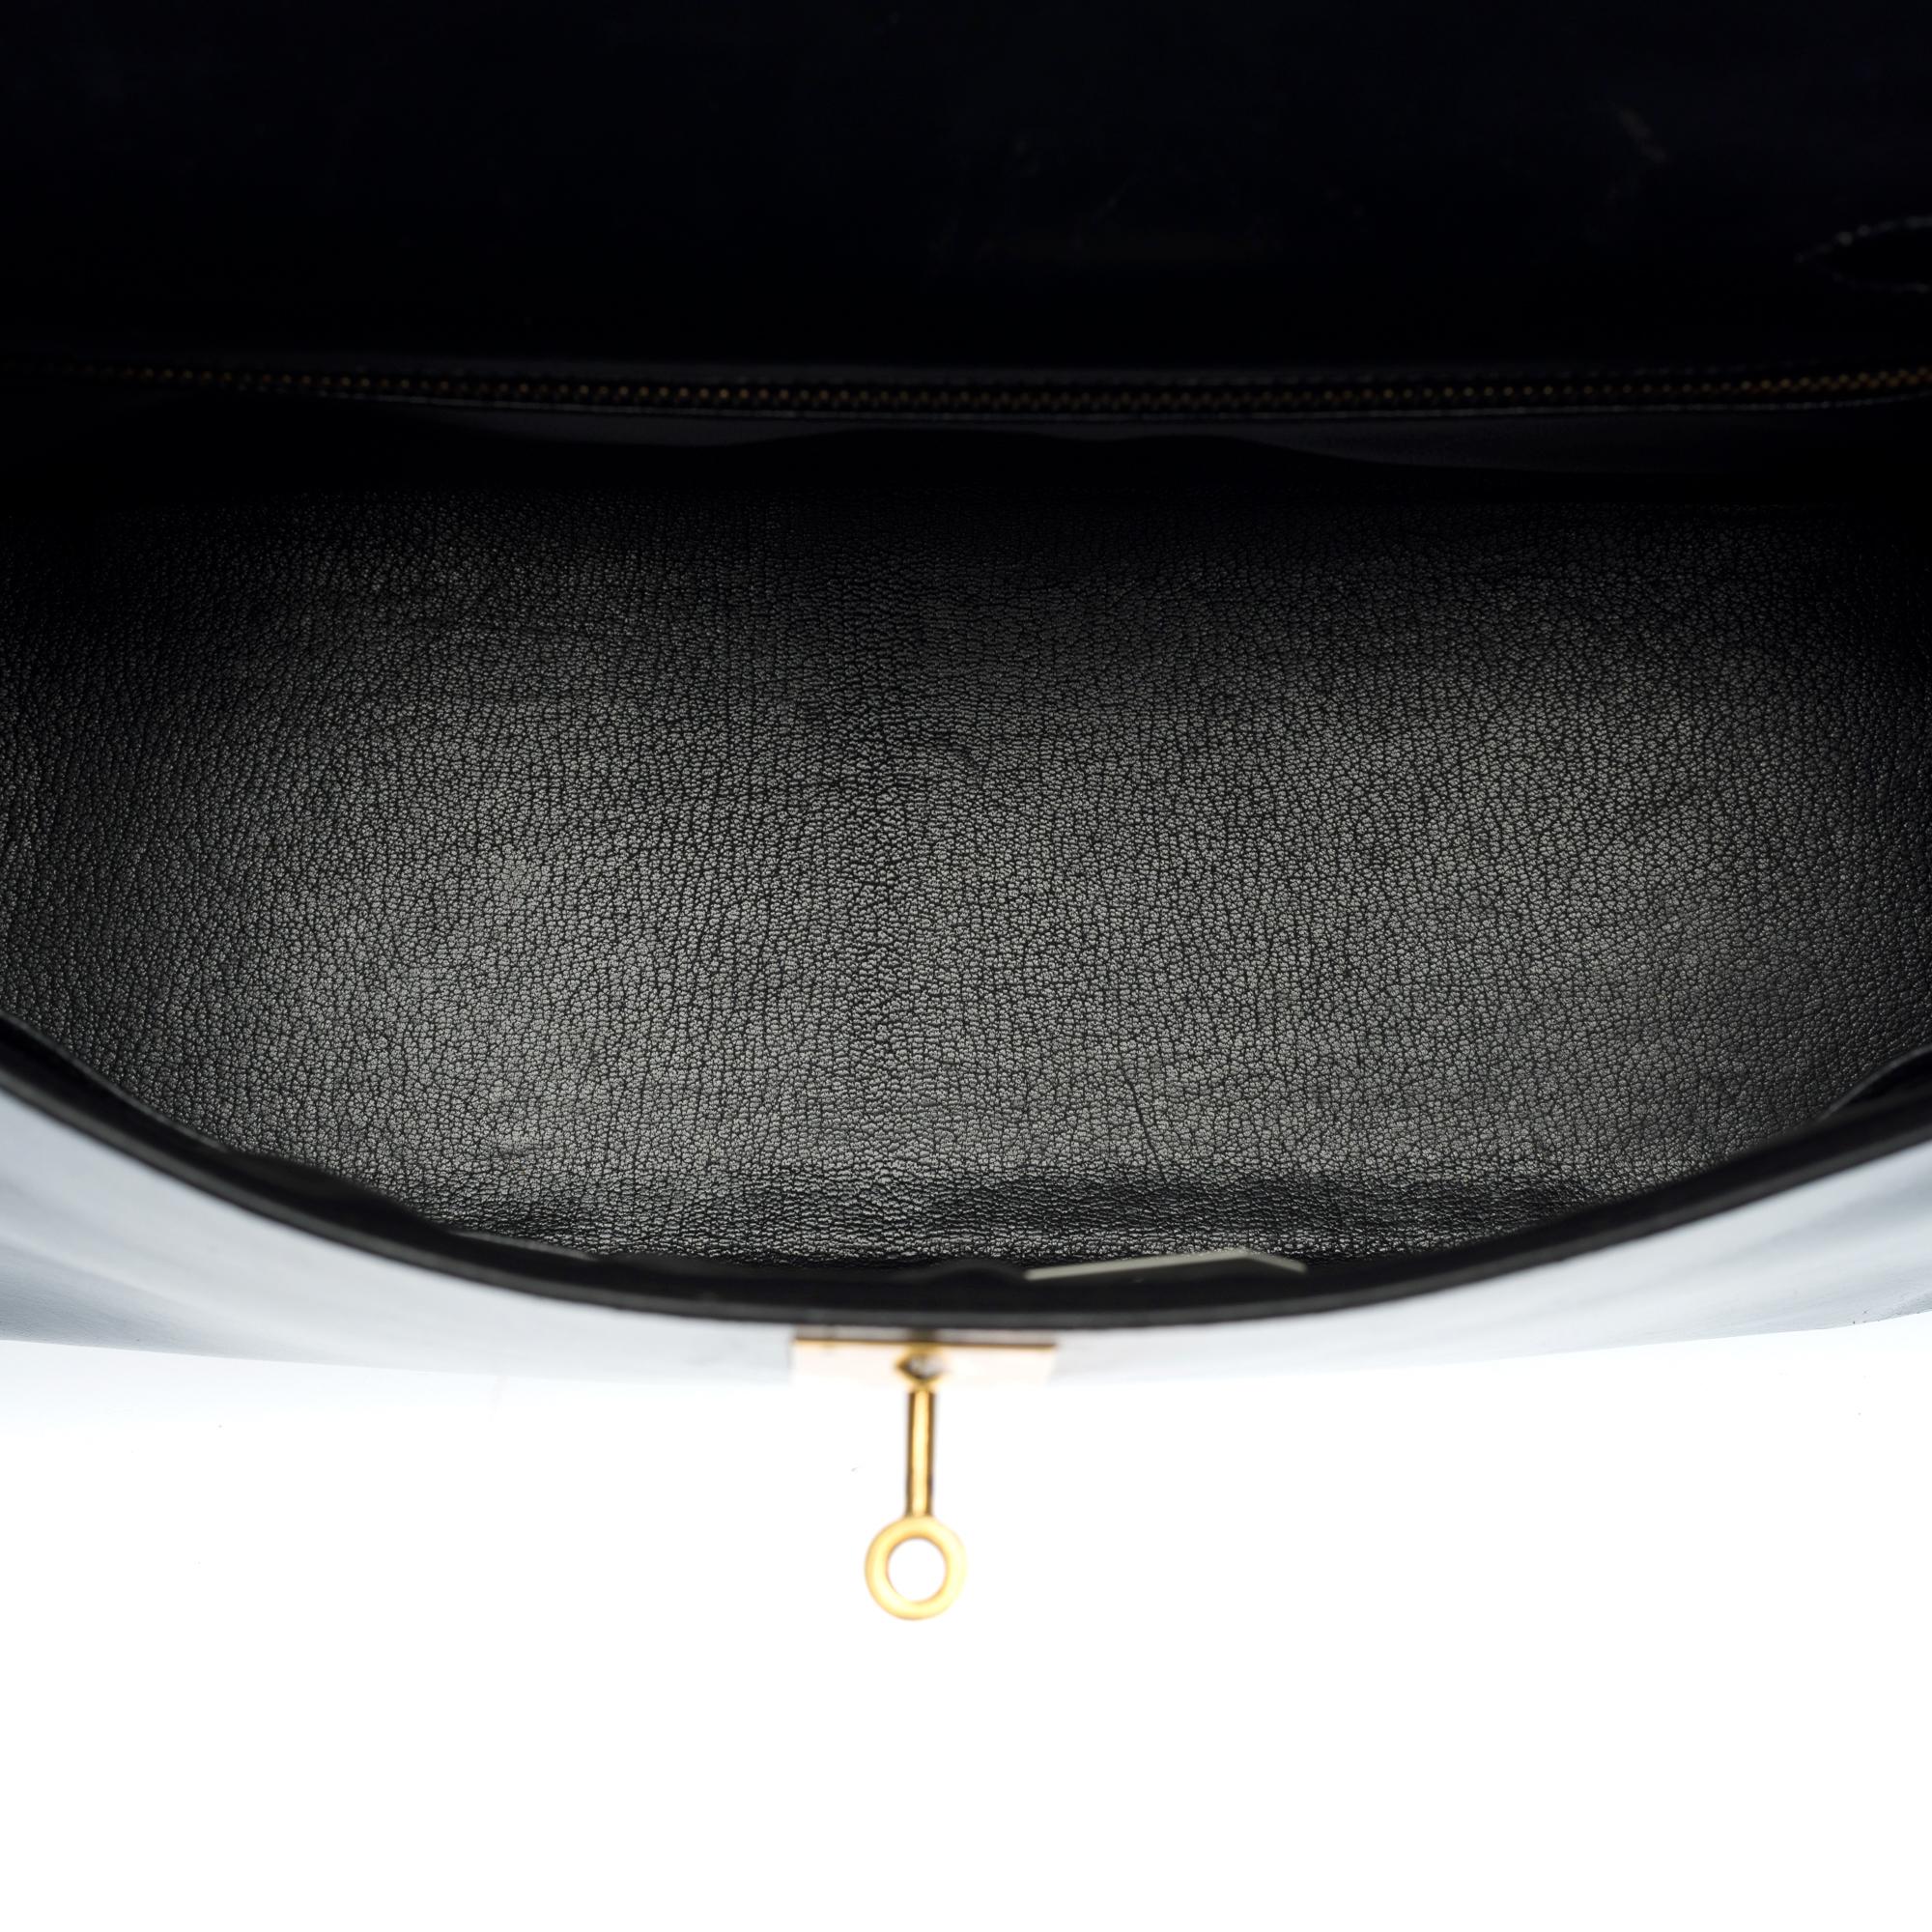 Customized Hermès Kelly 35 handbag strap in black calfskin & Crocodile, GHW  4